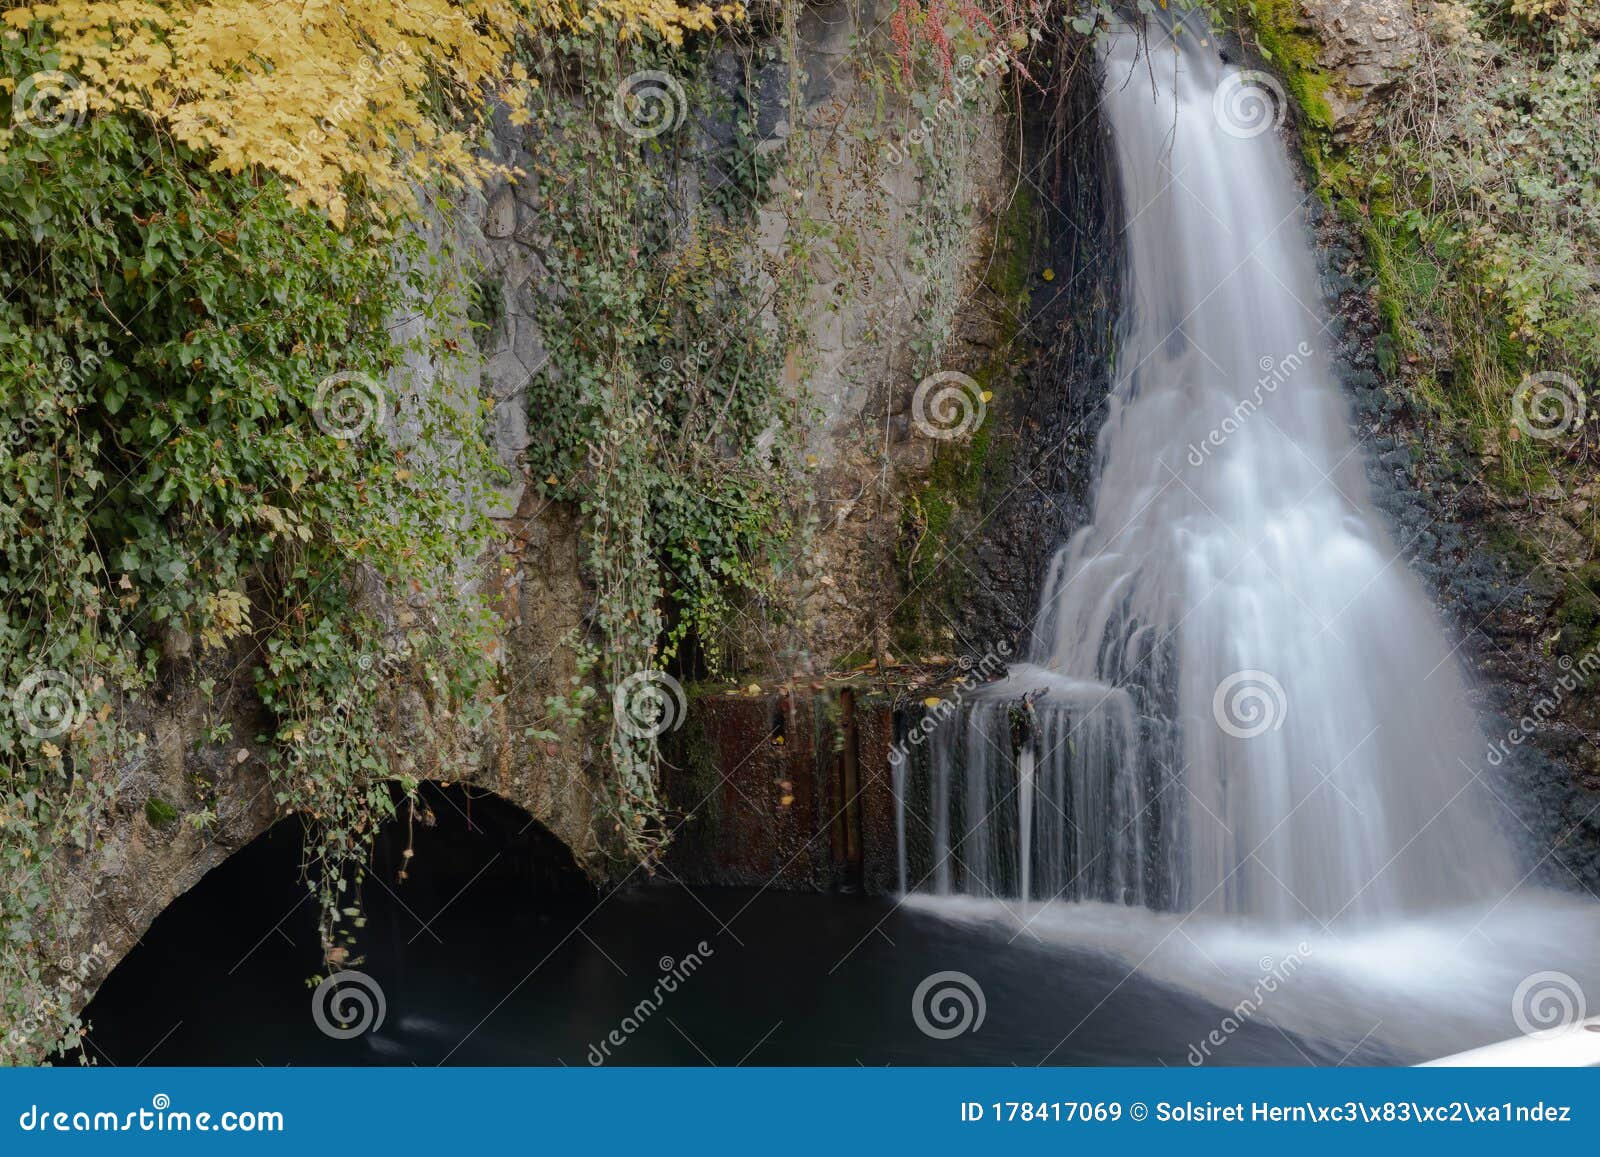 cascadas sedosas de rhine falls en suiza